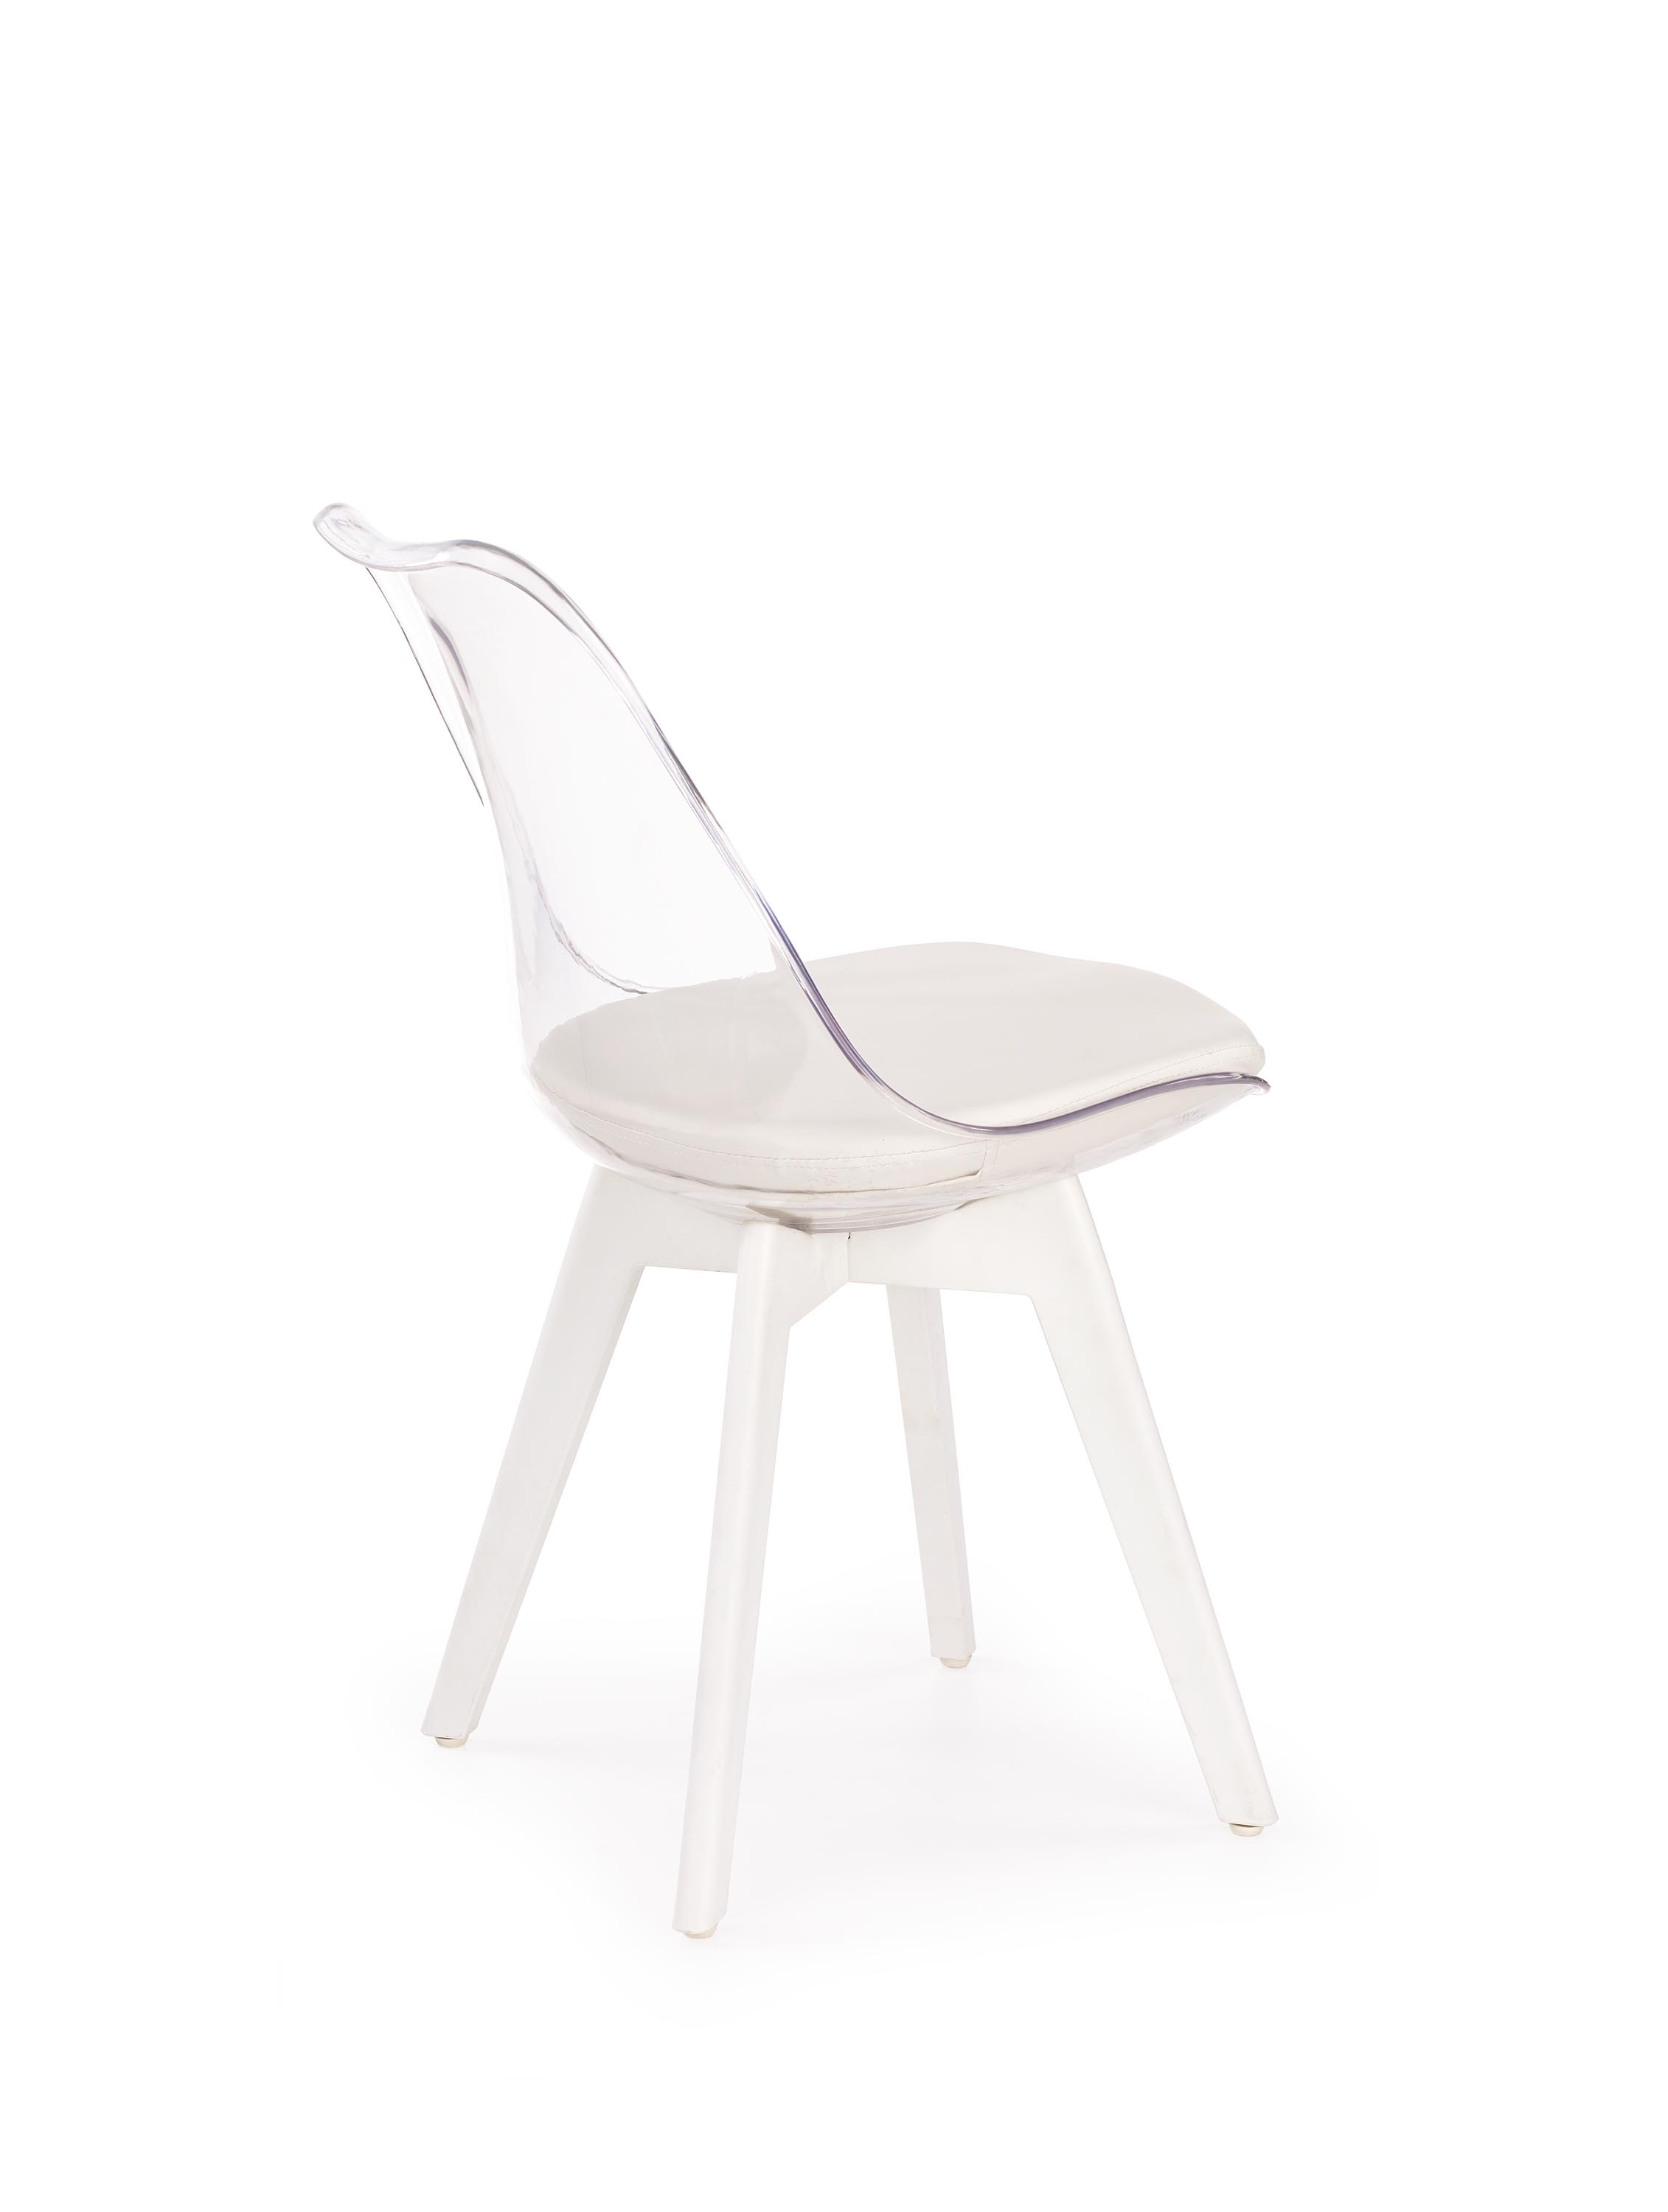 K245 krzesło bezbarwny / biały k245 krzesło bezbarwny / biały